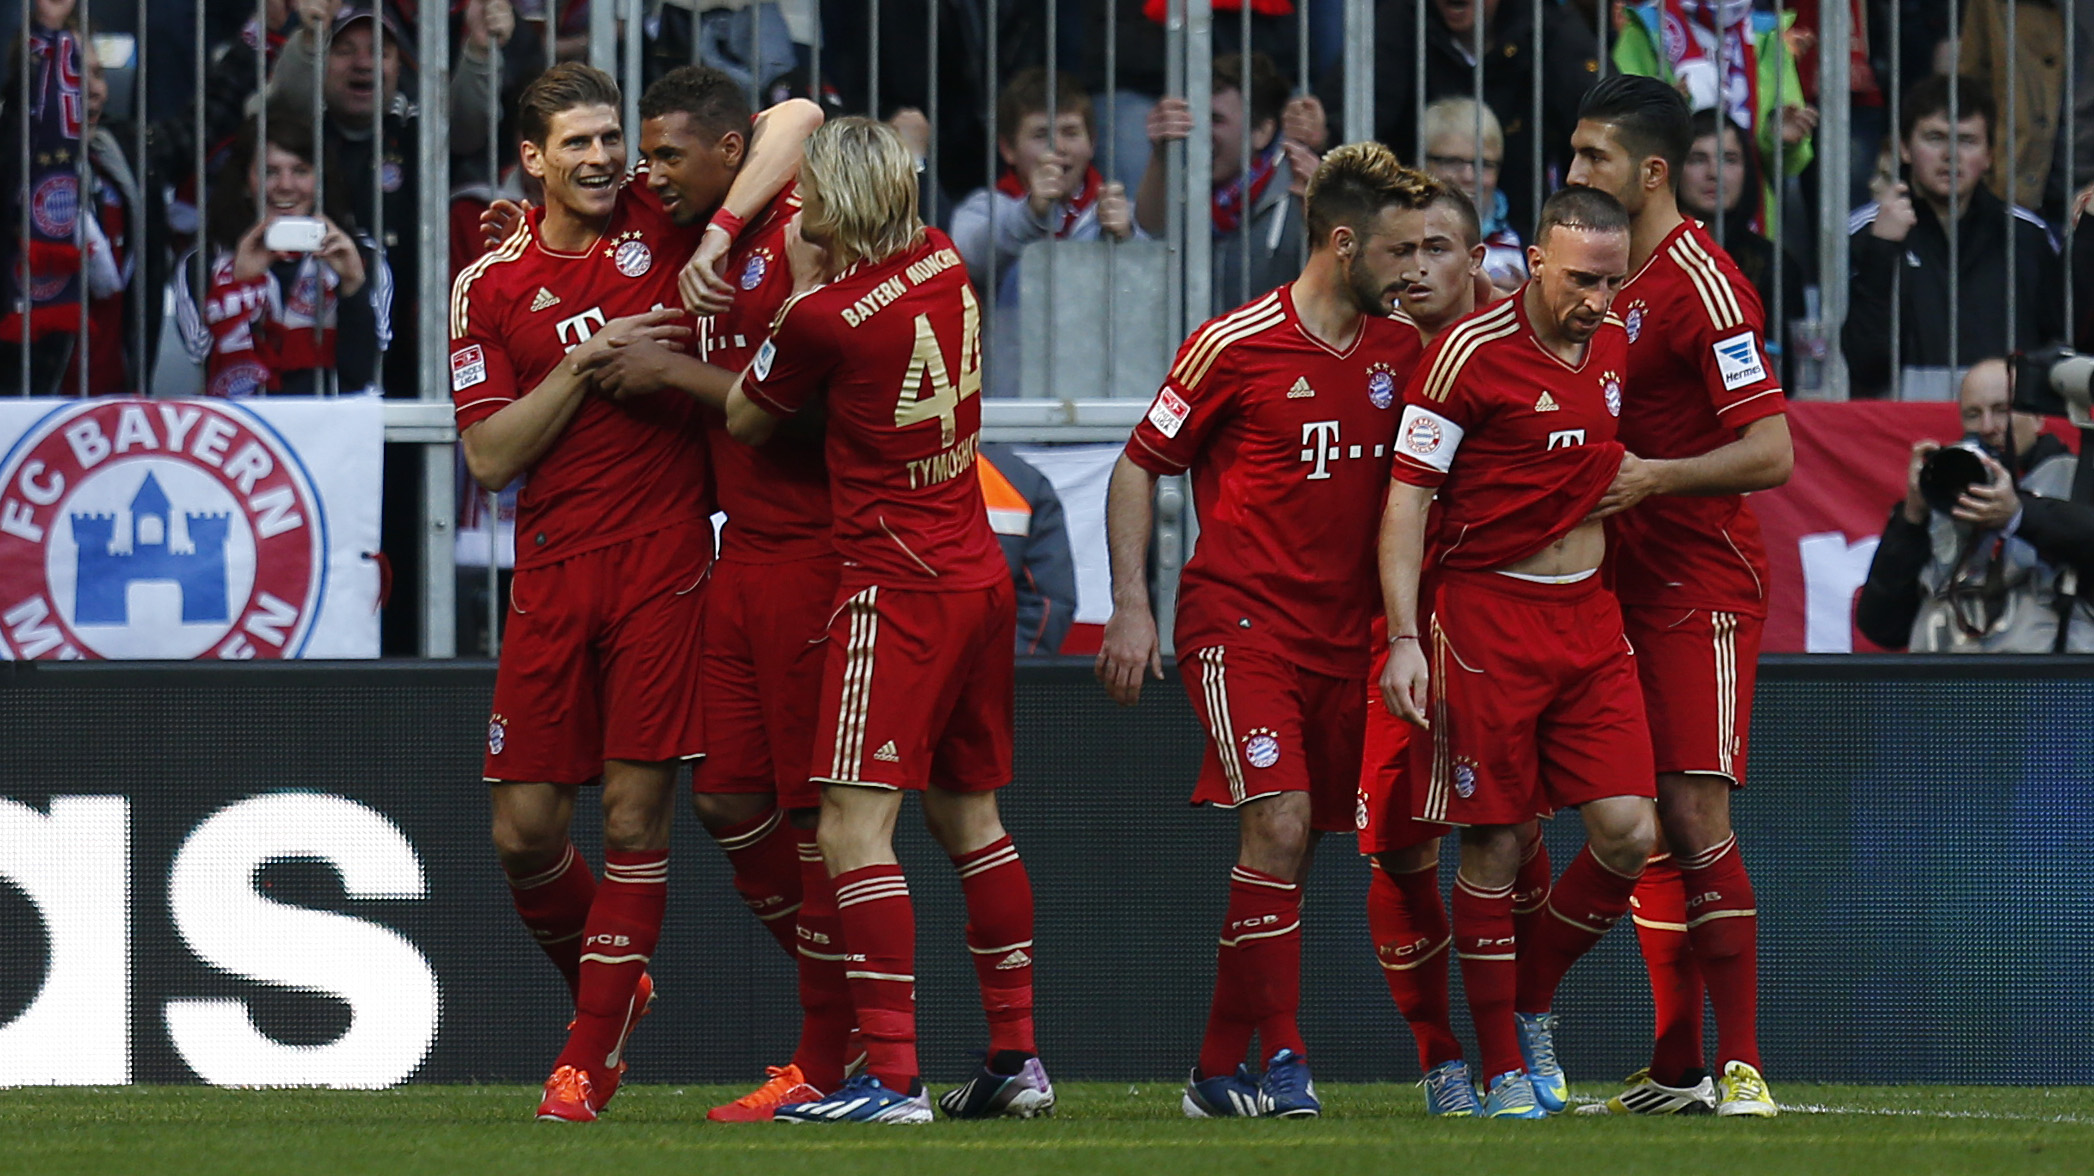 J29 : Le Bayern célèbre, Mourinho prend note, mauvaise opération pour Schalke et le rêve de Fribourg